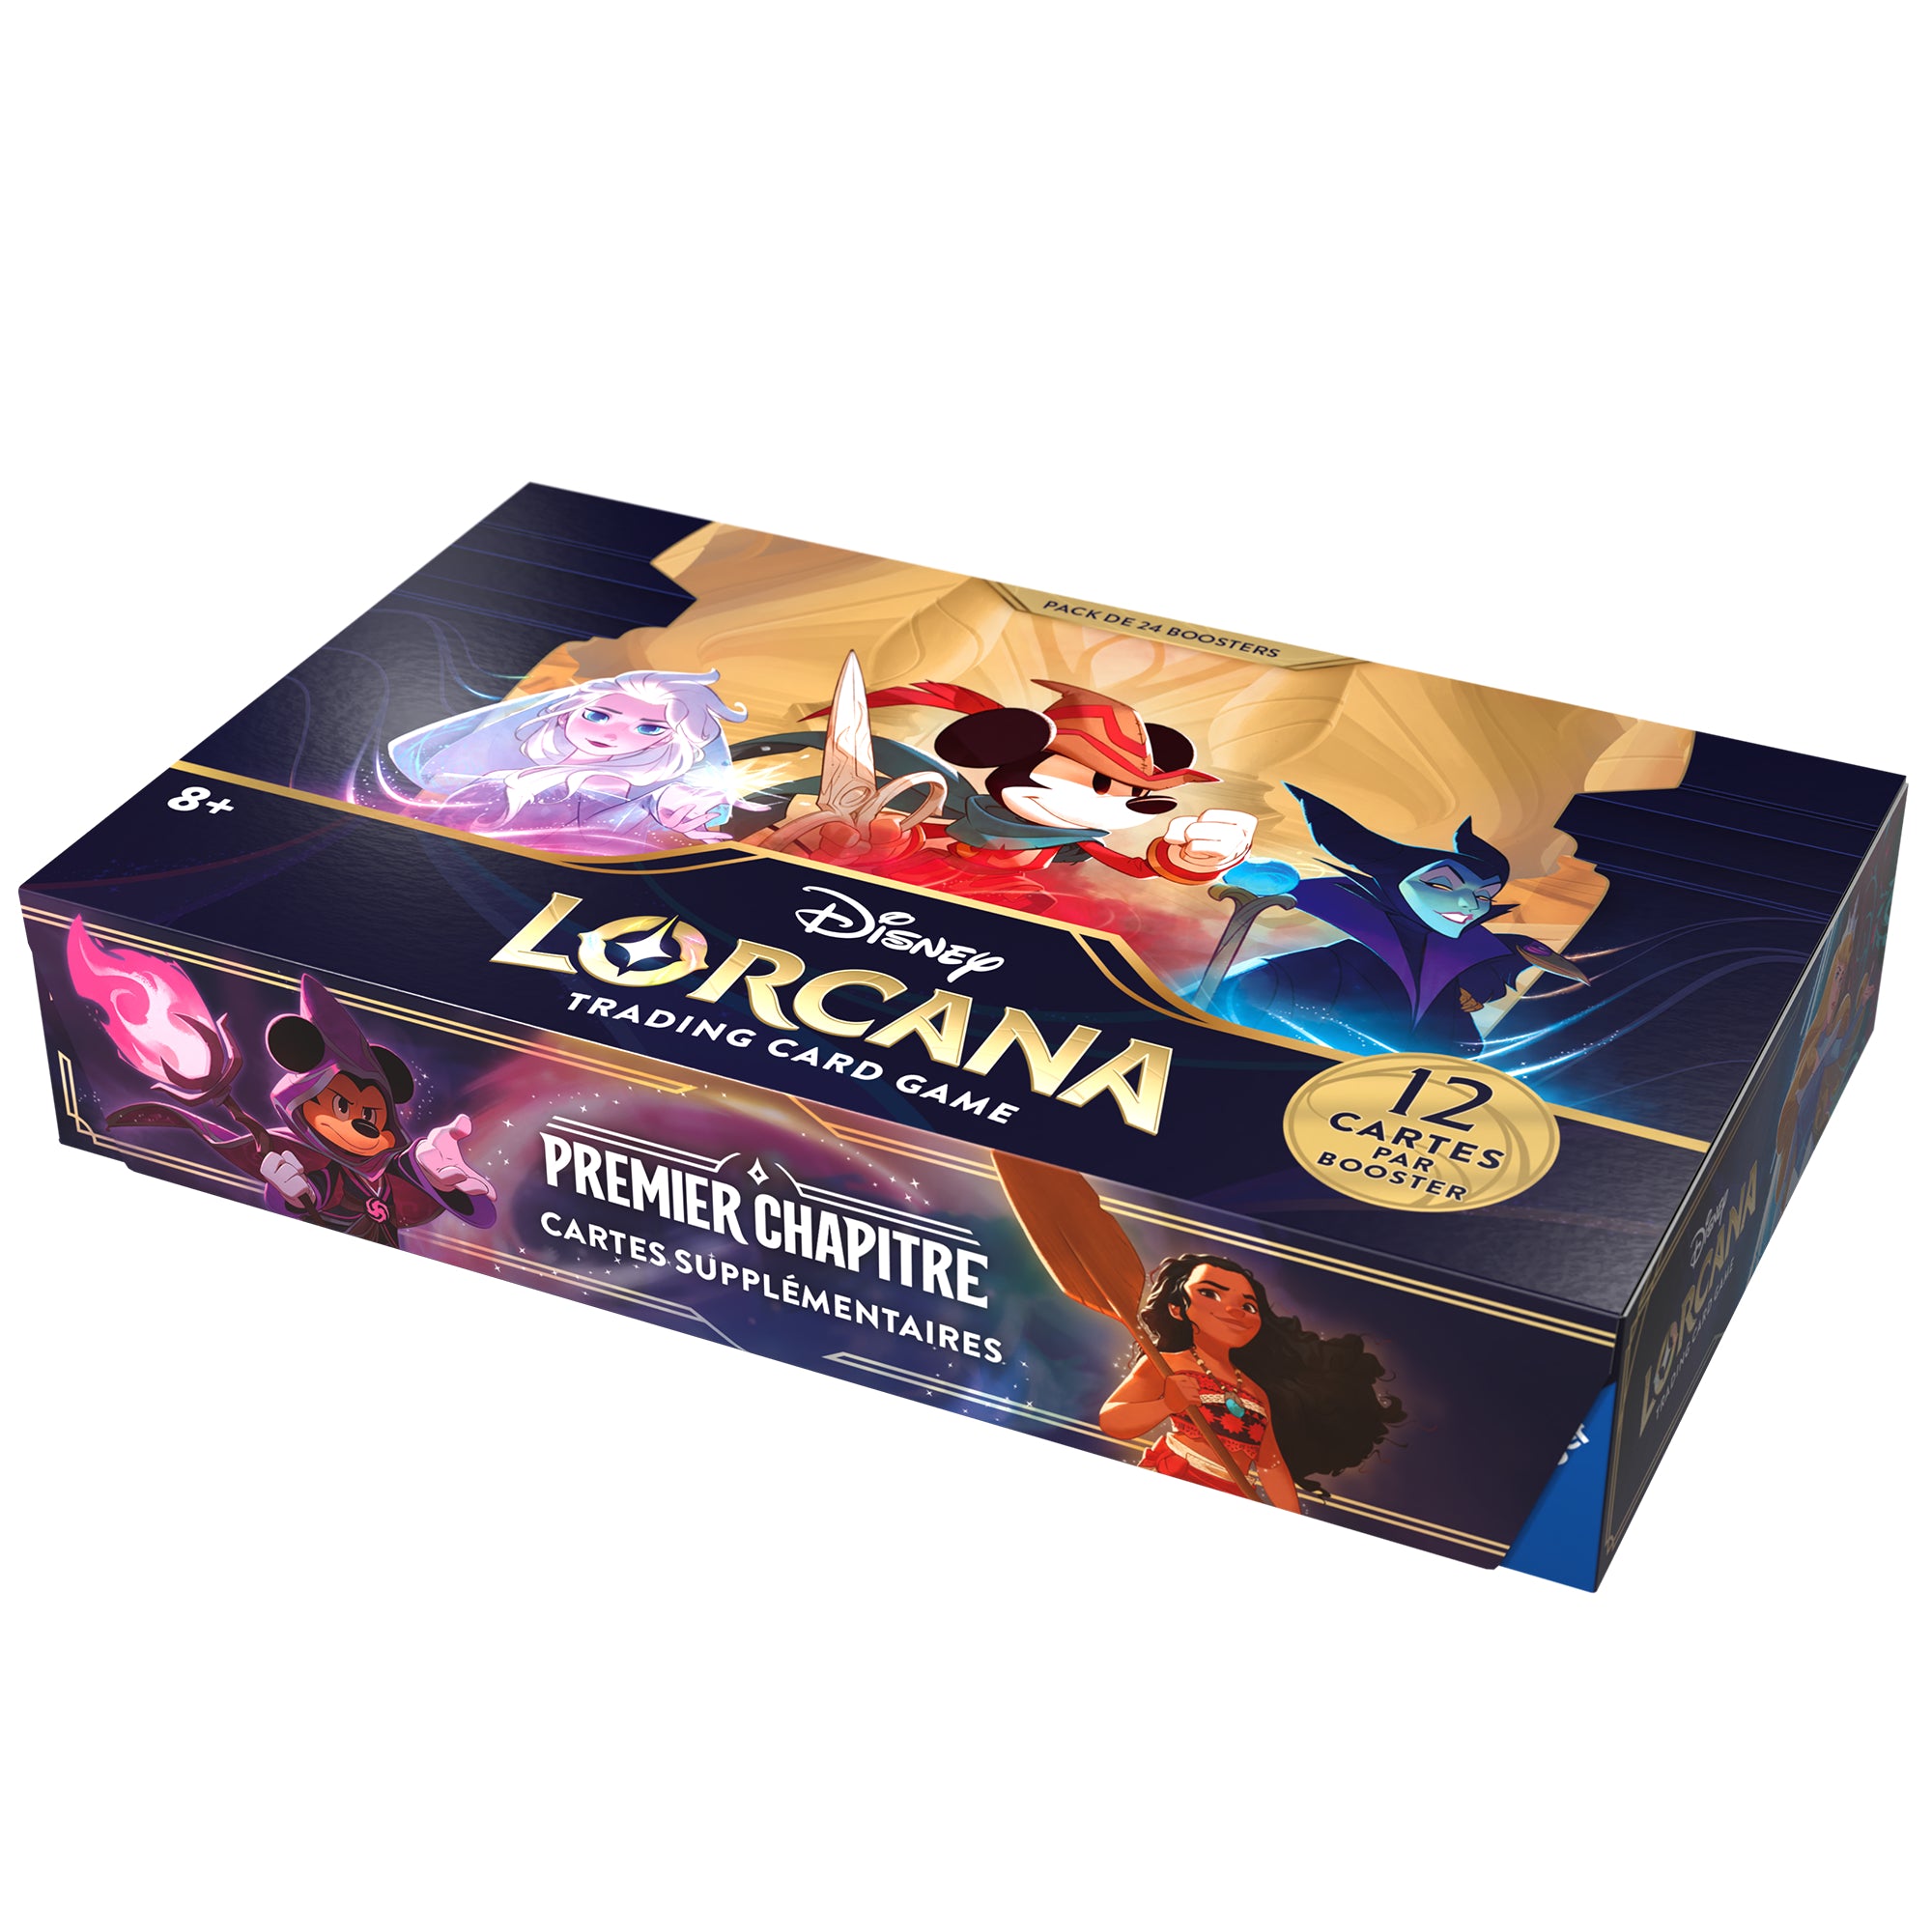 Disney Lorcana set1: Display 24 Boosters français